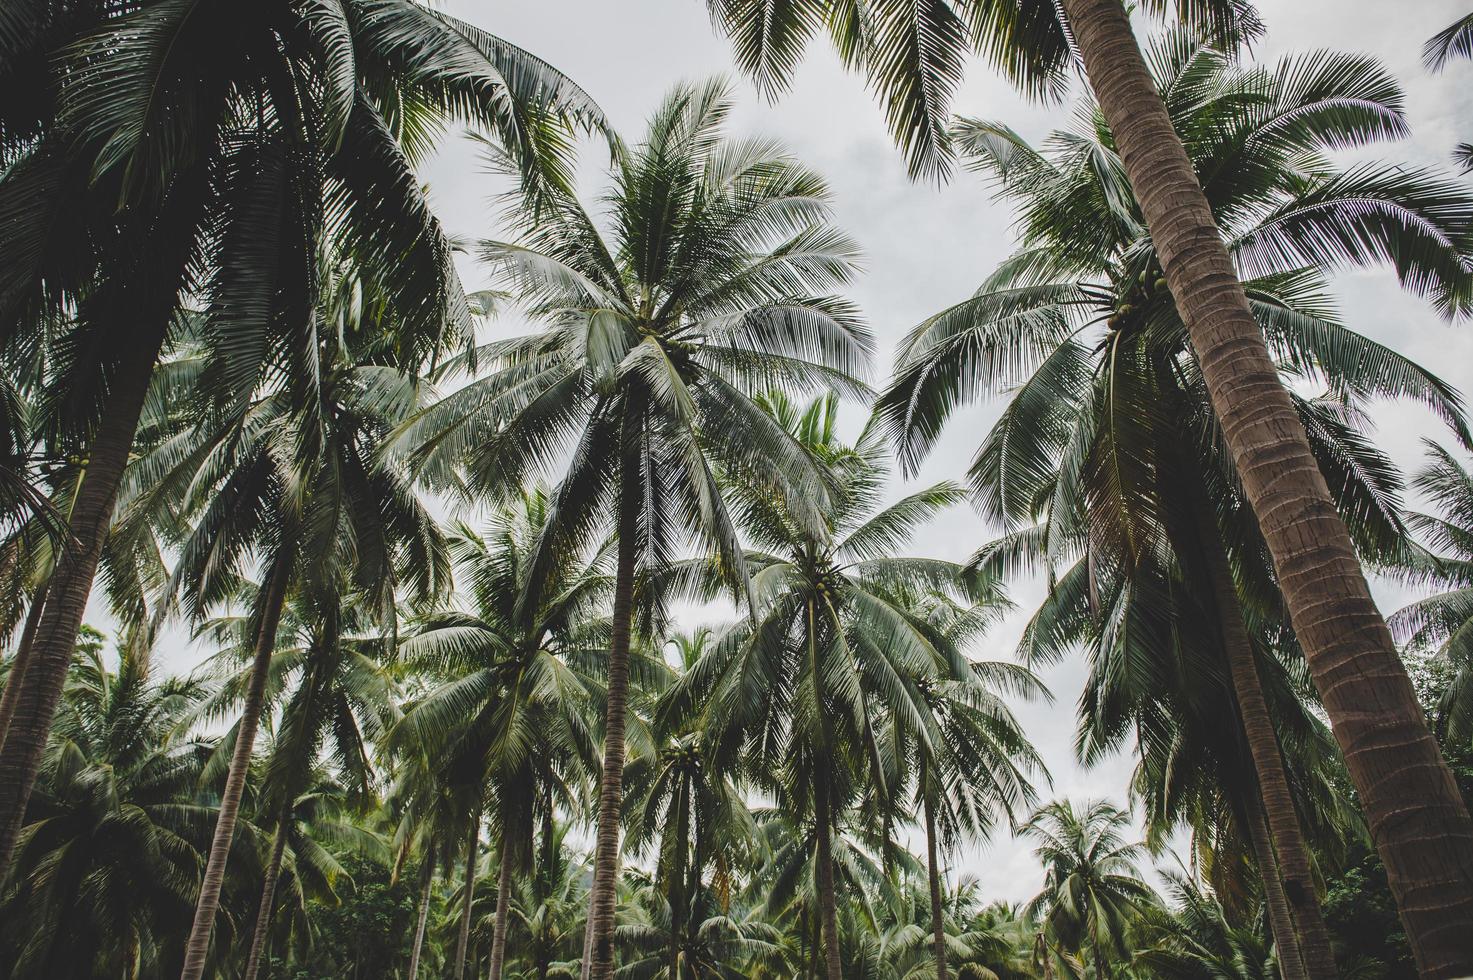 Jardins de cocotiers en Thaïlande photo